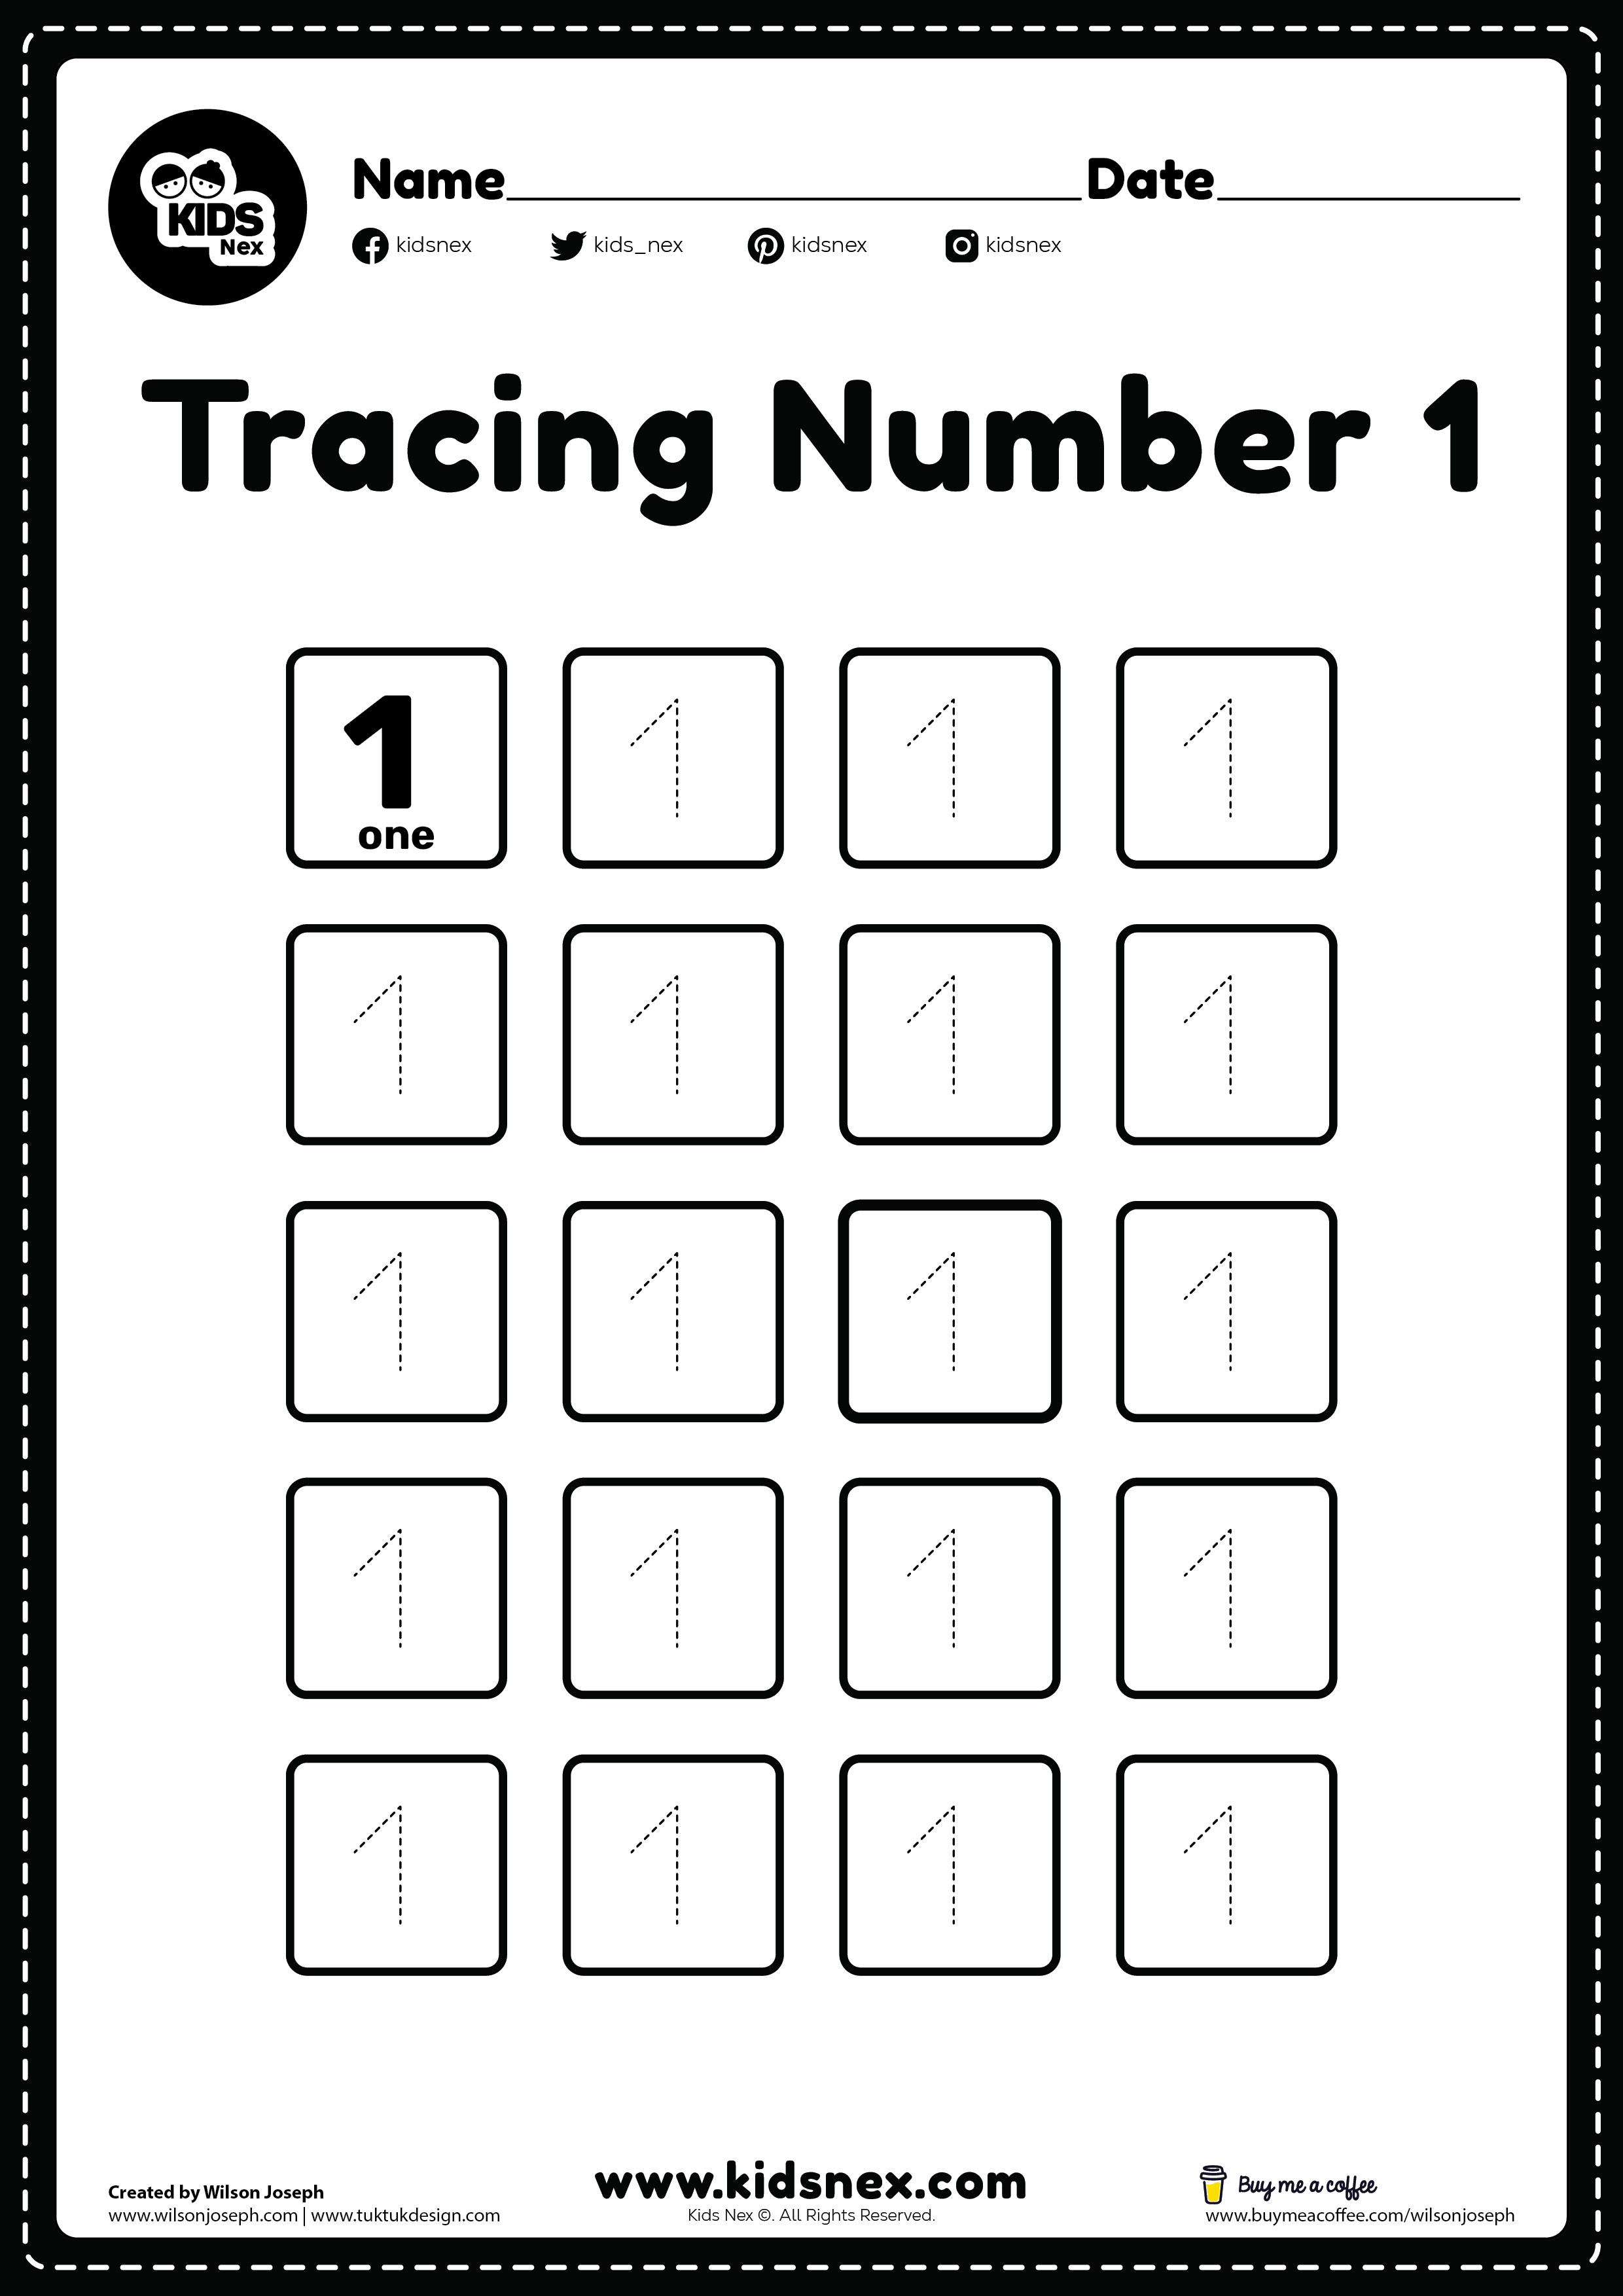 1 Number tracing worksheet for kindergarten and preschool kids